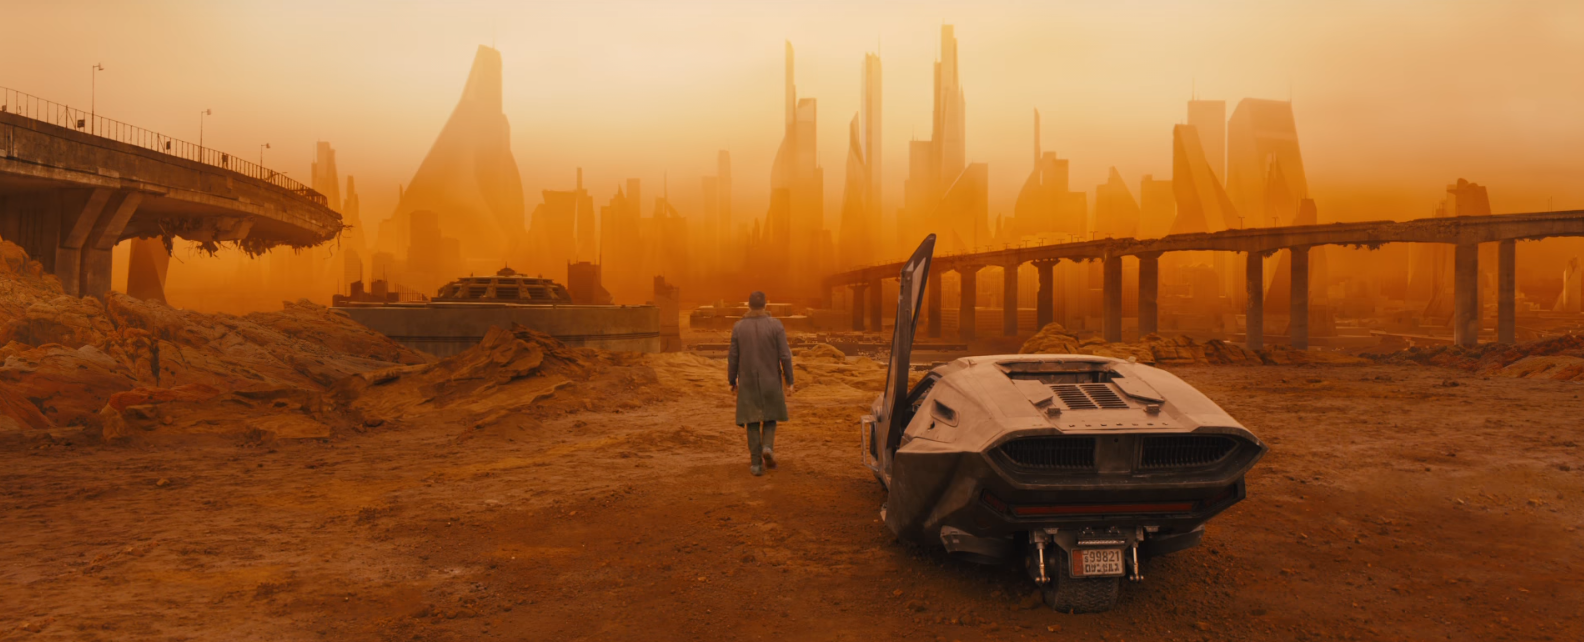 Cena de trailer de Blade Runner 2049 (Foto: Reprodução/Youtube)